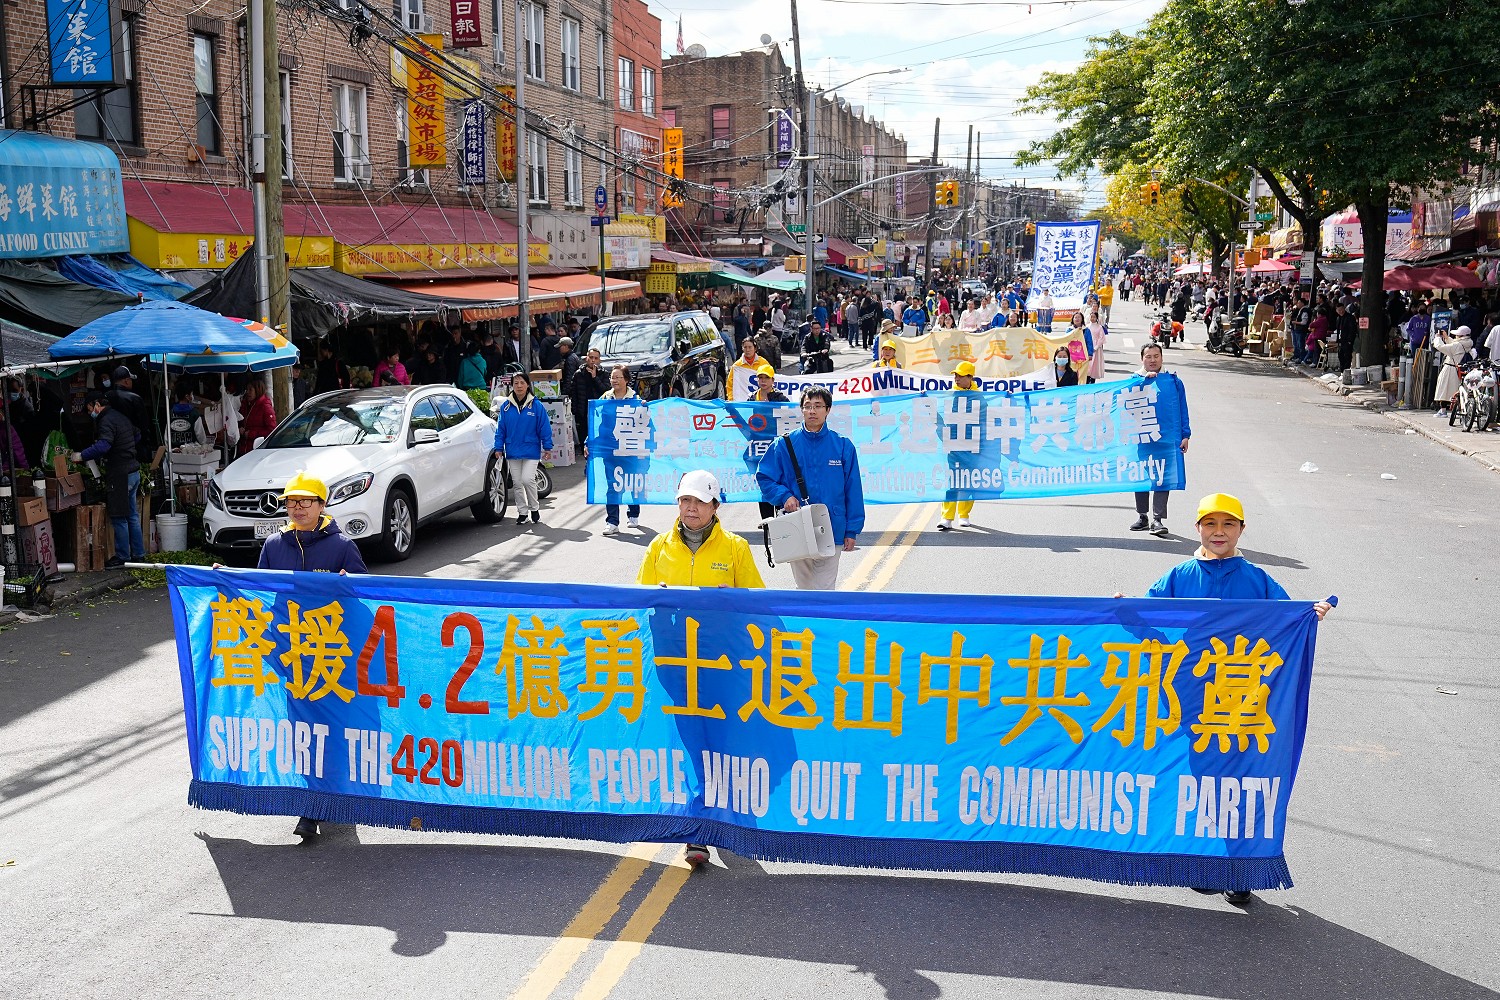 Image for article Brooklyn, New York : Un grand défilé célèbre les 420 millions de personnes qui ont démissionné des organisations du PCC